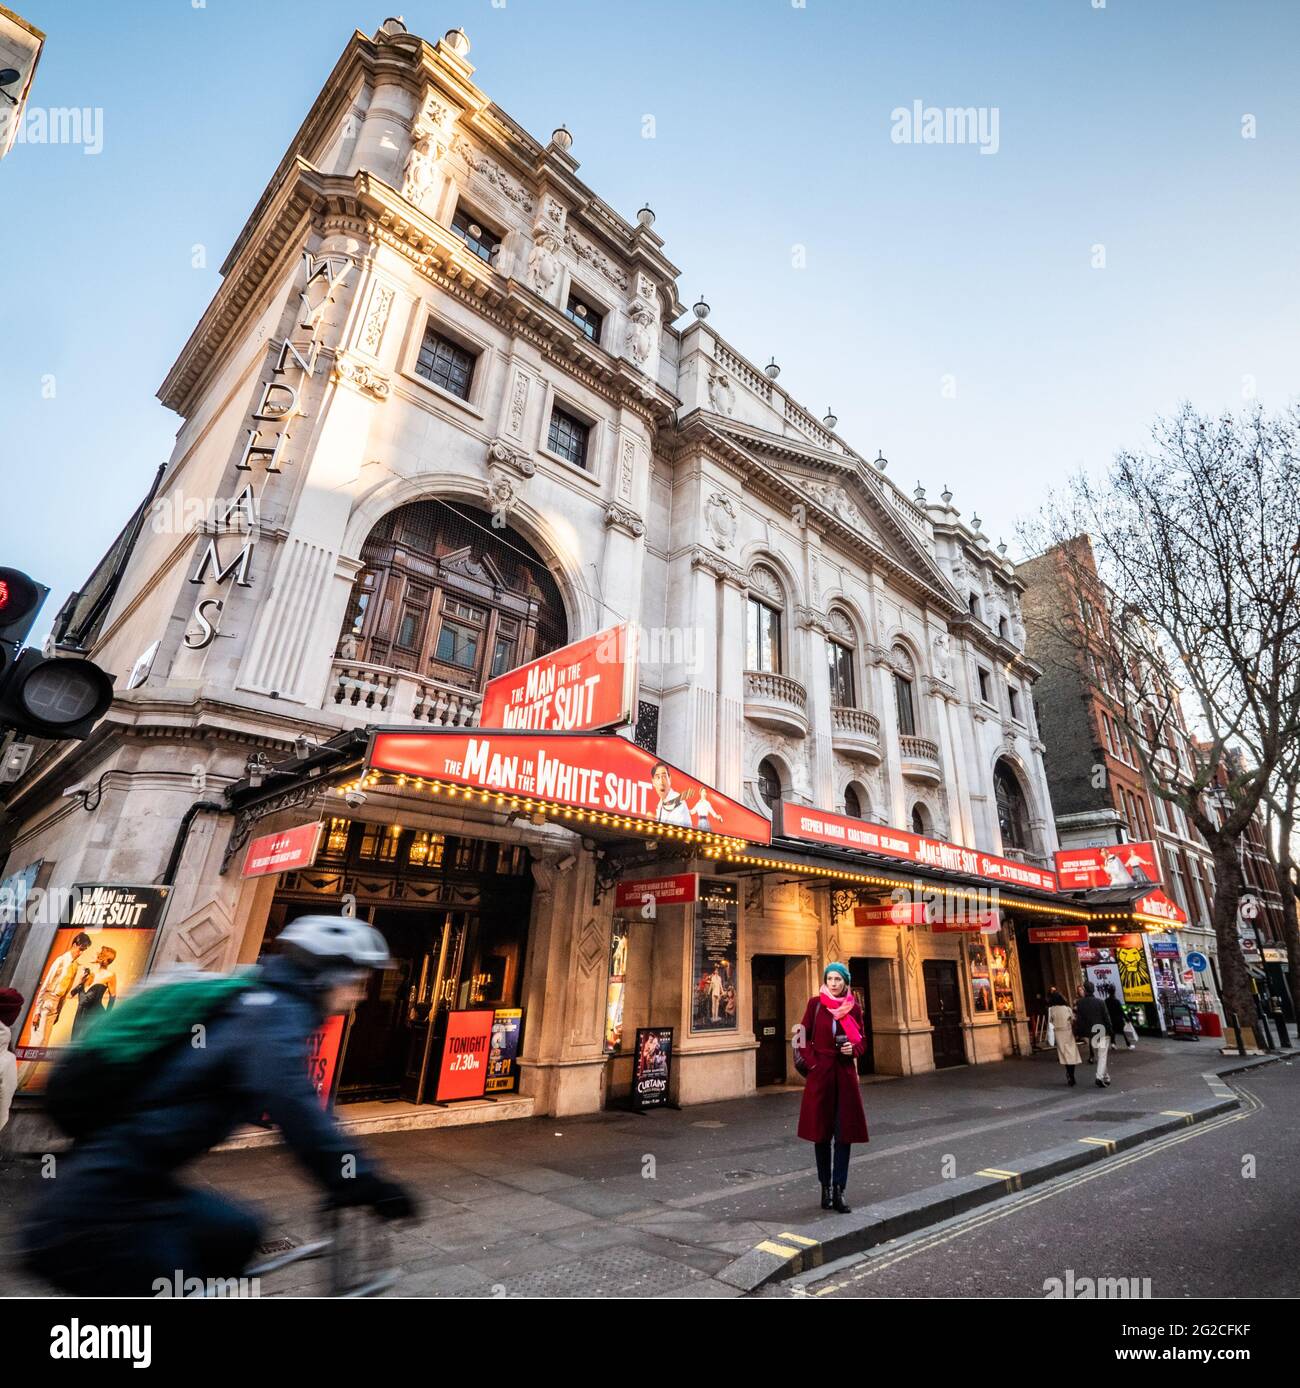 Wyndhams Theatre, Londres. Vista en ángulo amplio y bajo de la fachada de un teatro en el West End londinense con el traje Man in the White en producción. Foto de stock